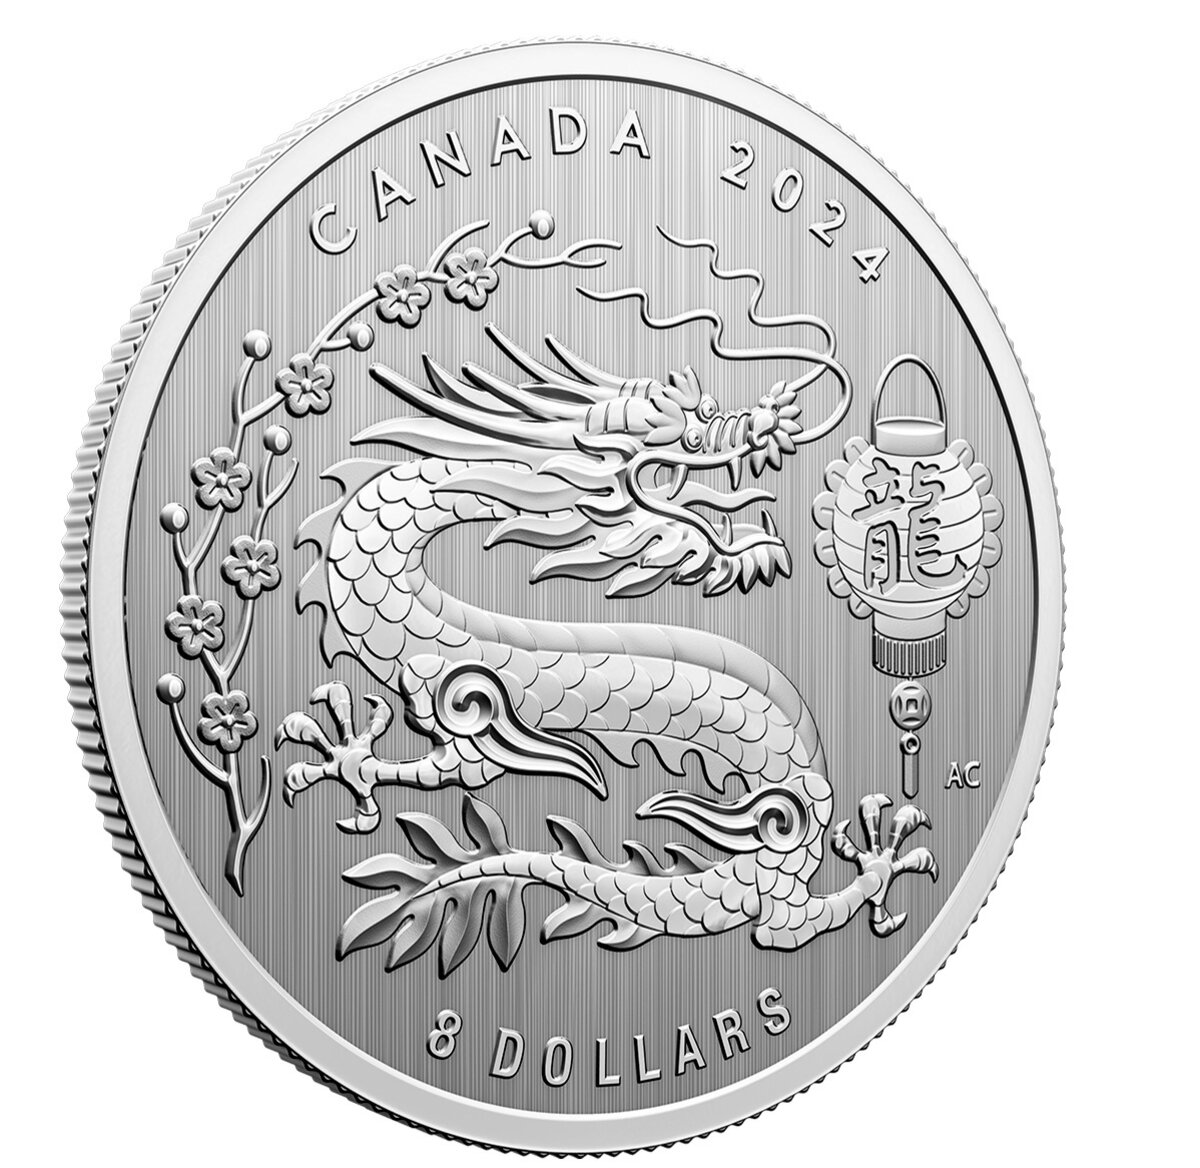 Le Canada a une nouvelle pièce de monnaie en argent arborant un gros dragon  (PHOTO)